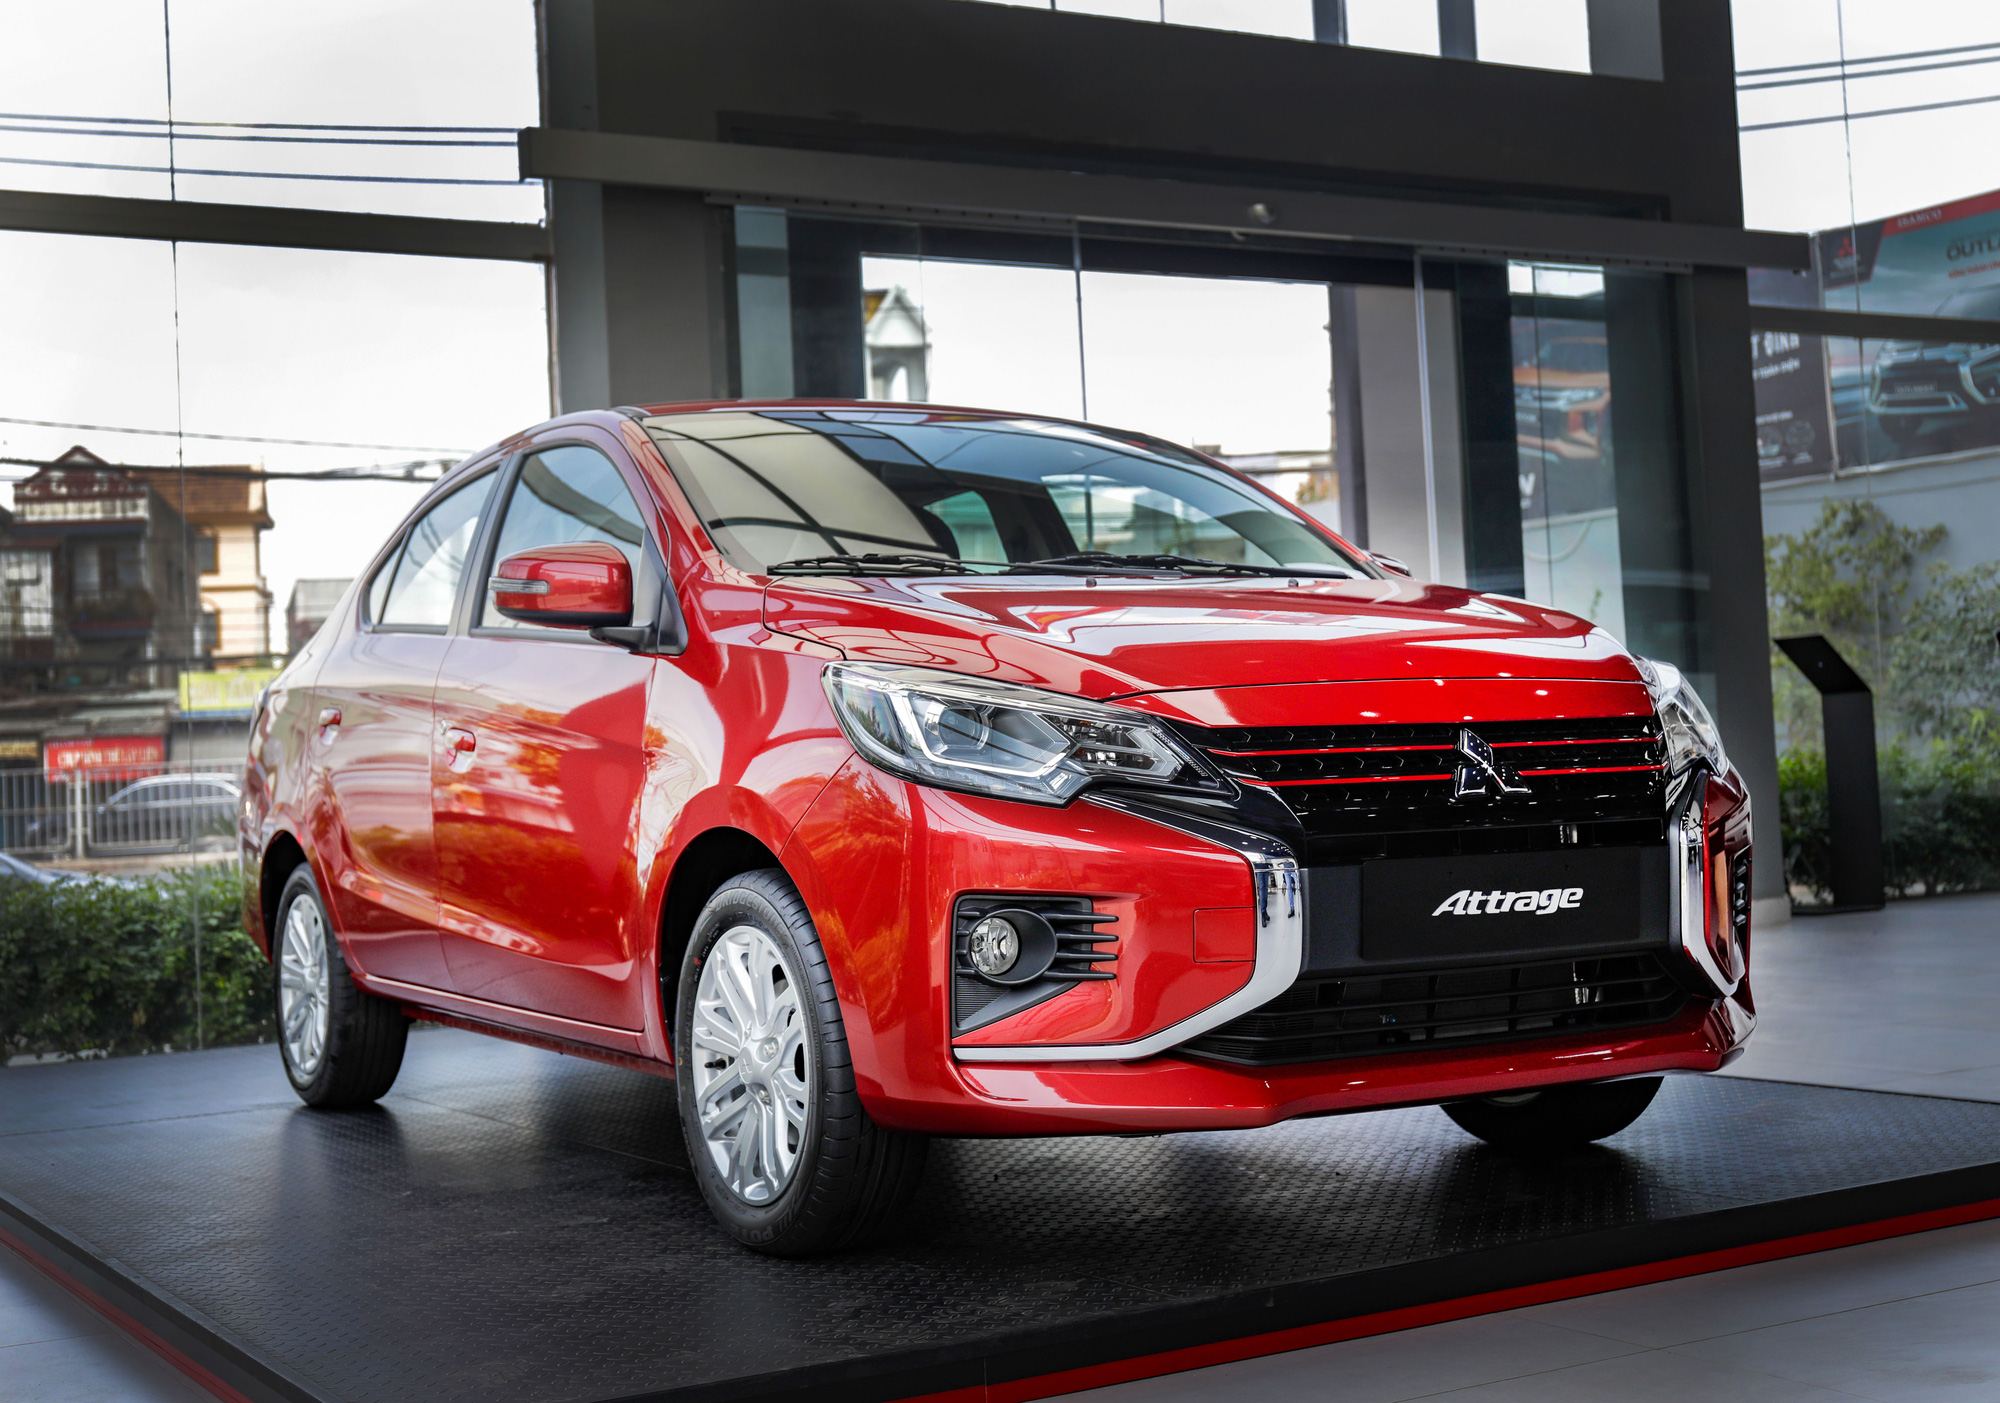 Ra mắt Mitsubishi Attrage Premium 2021 tại Việt Nam: Giá 485 triệu, thêm 7 trang bị mới tập trung vào an toàn, có điểm vượt Toyota Vios - Ảnh 1.